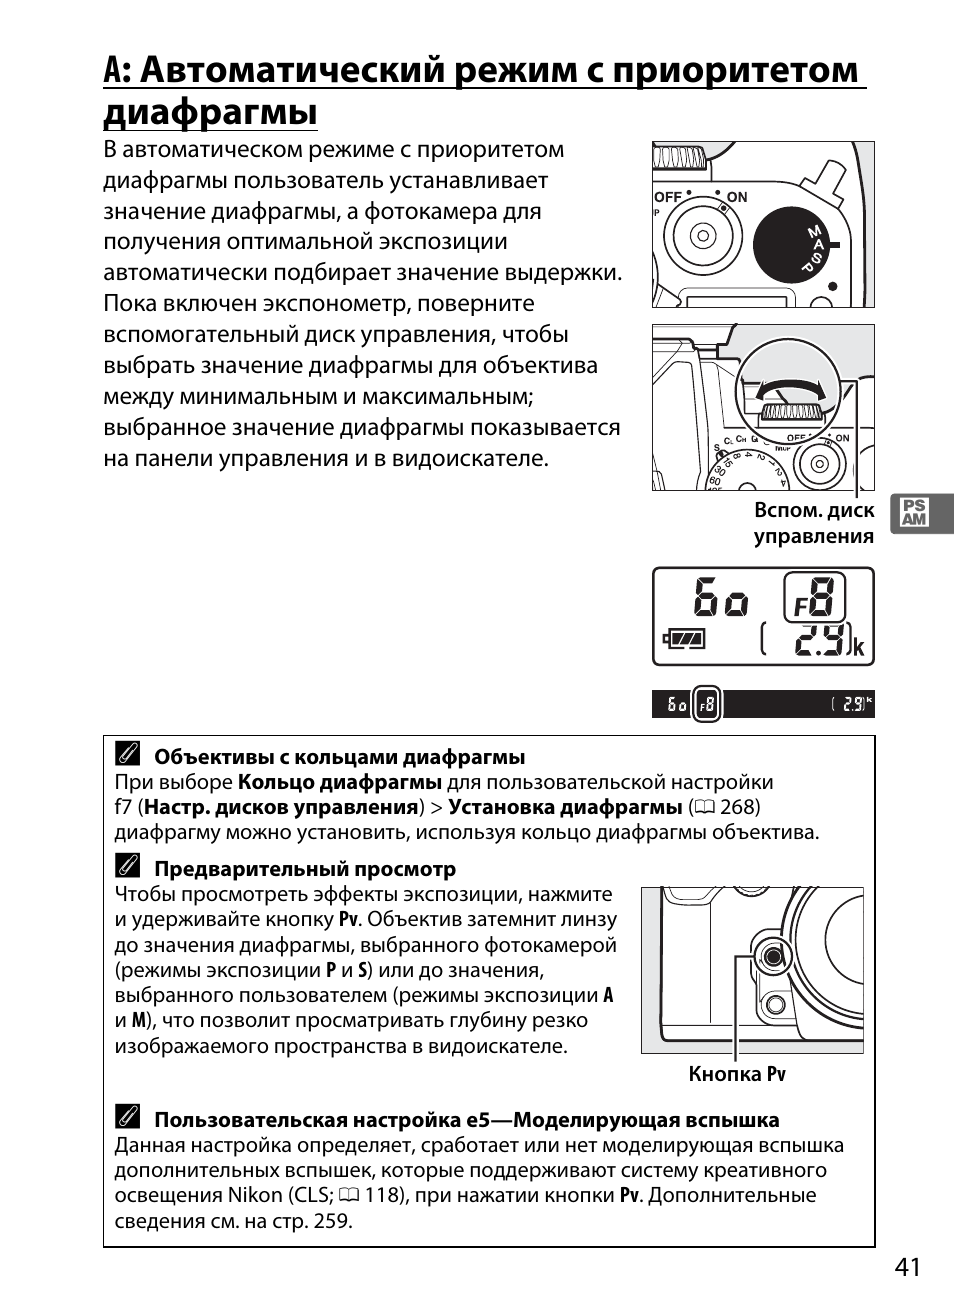 A: автоматический режим с приоритетом диафрагмы | Инструкция по эксплуатации Nikon Df | Страница 61 / 396